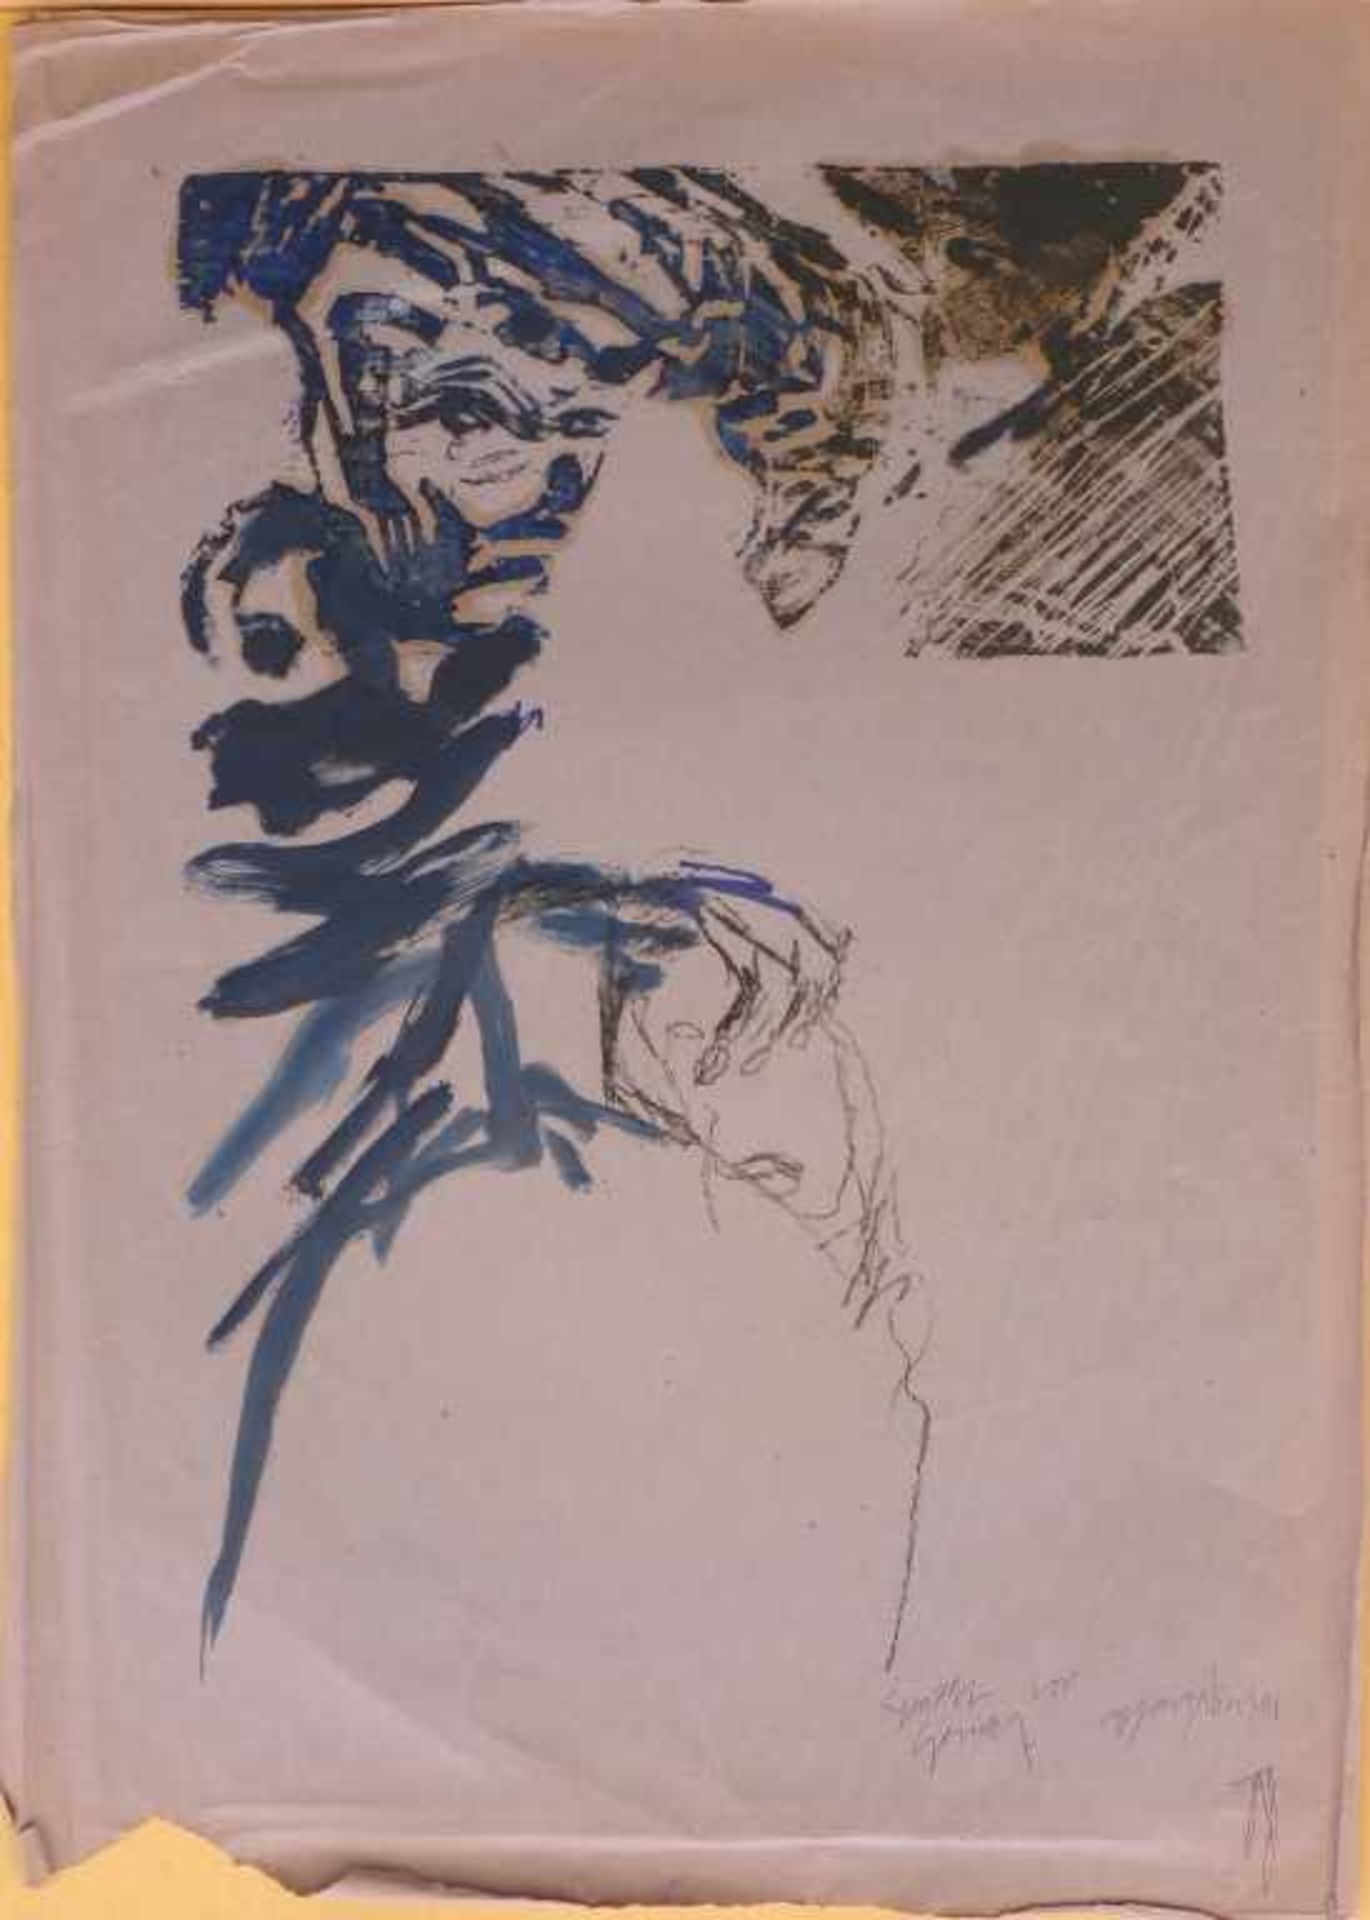 NICOLAI, CARSTEN: "Gesicht vor Gesicht", 1988blaue Druckfarbe, Kohle und Holzschnitt auf